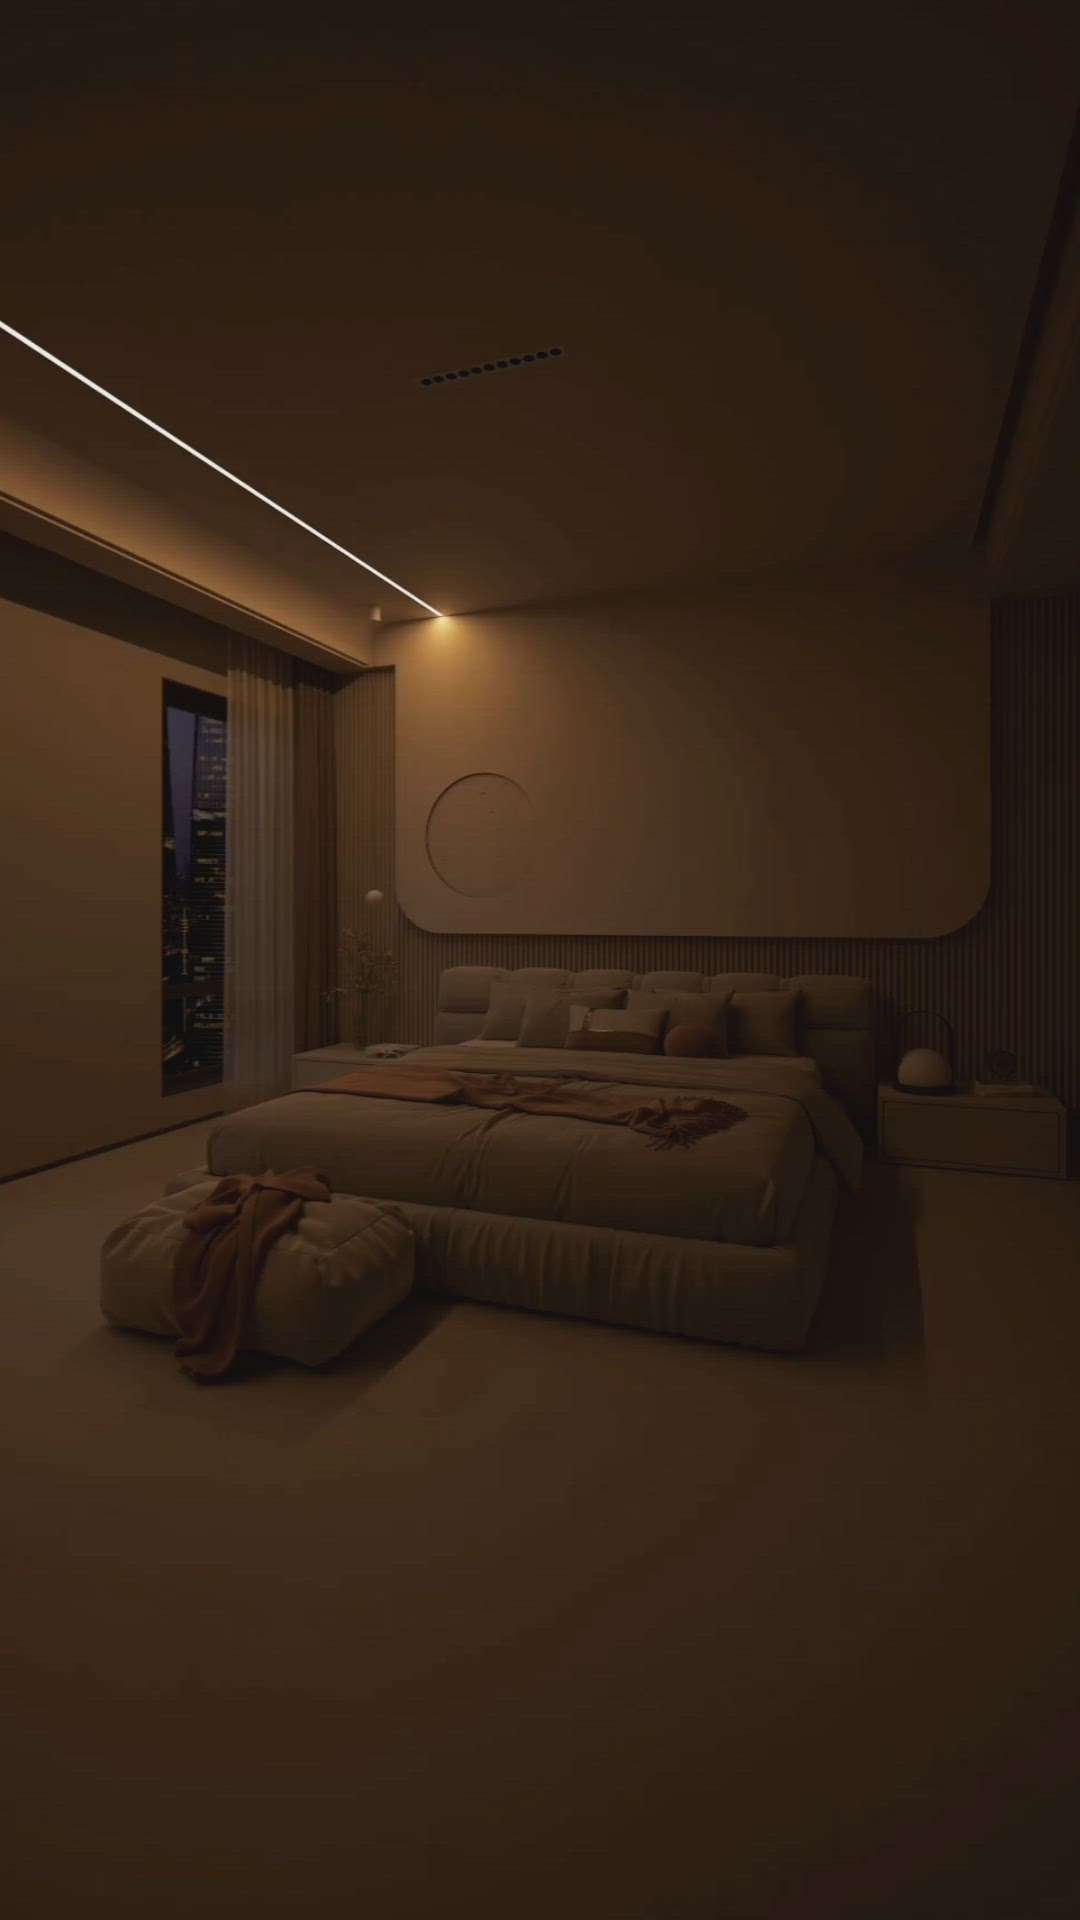 #InteriorDesigner #BedroomDecor